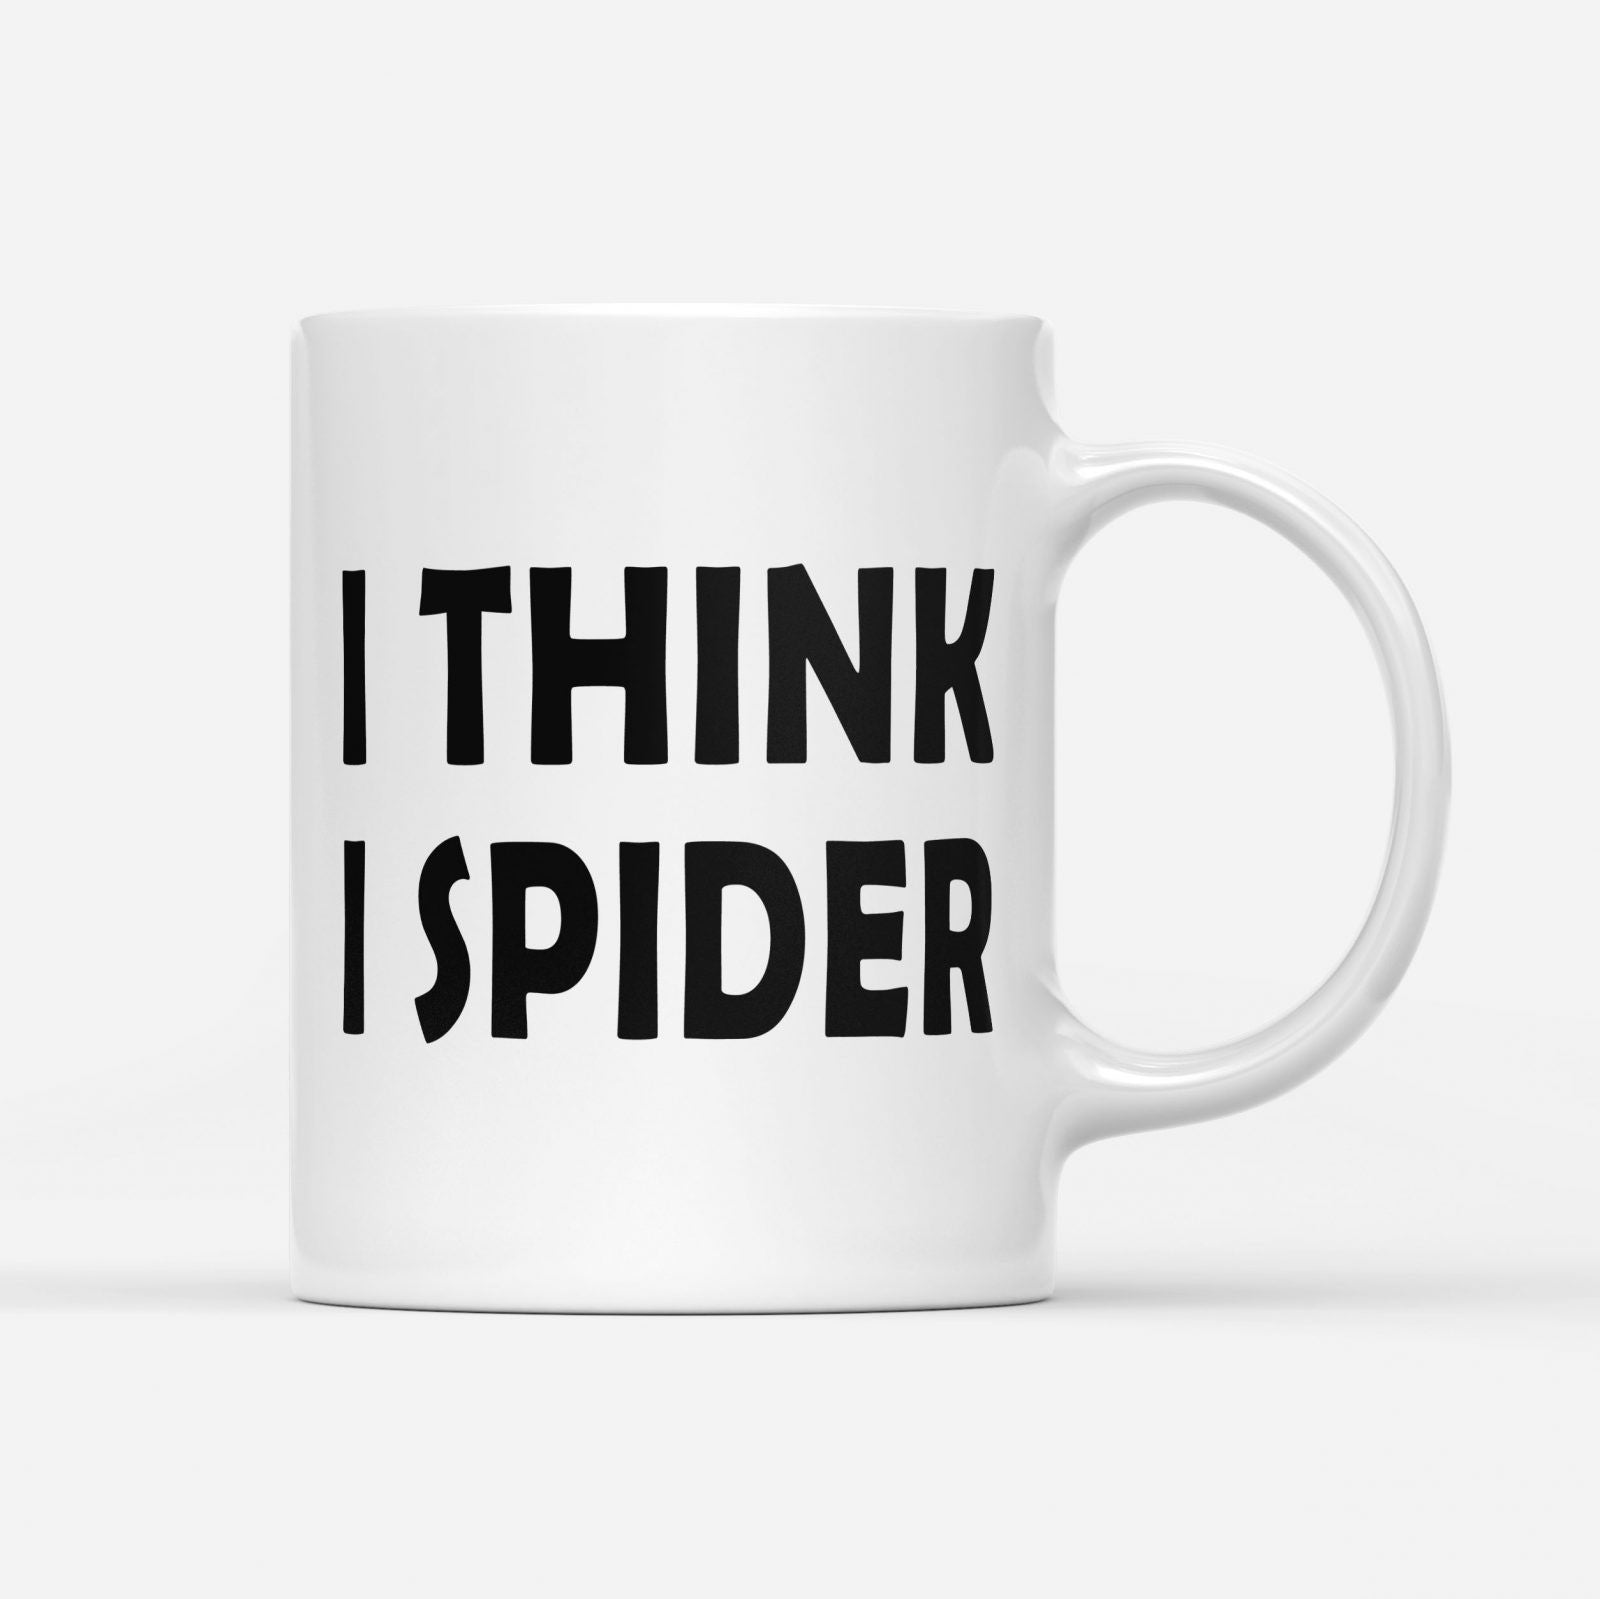 i think i spider